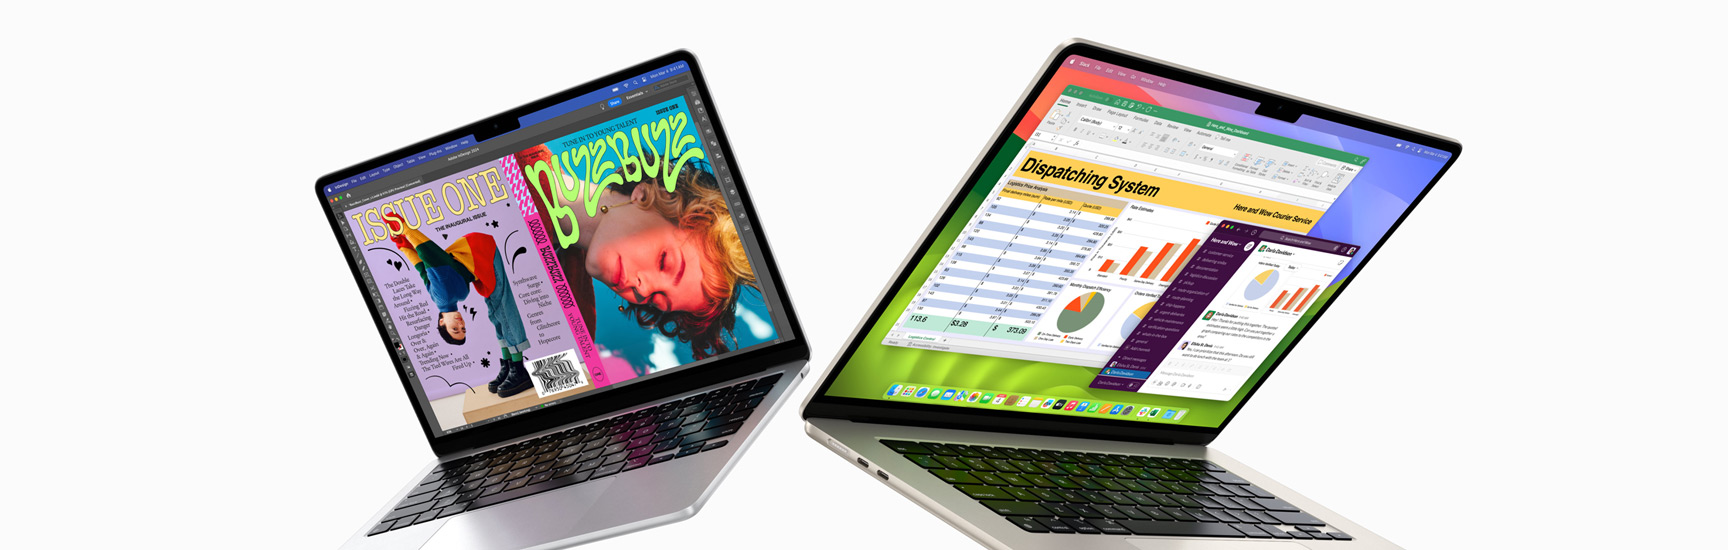 Delvis öppen 13-tums MacBook Air till vänster och 15-tums MacBook Air till höger. 13-tumsskärmen visar ett färgstarkt tidningsomslag som har skapats i In Design. 15-tumsskärmen visar Microsoft Excel och Slack.